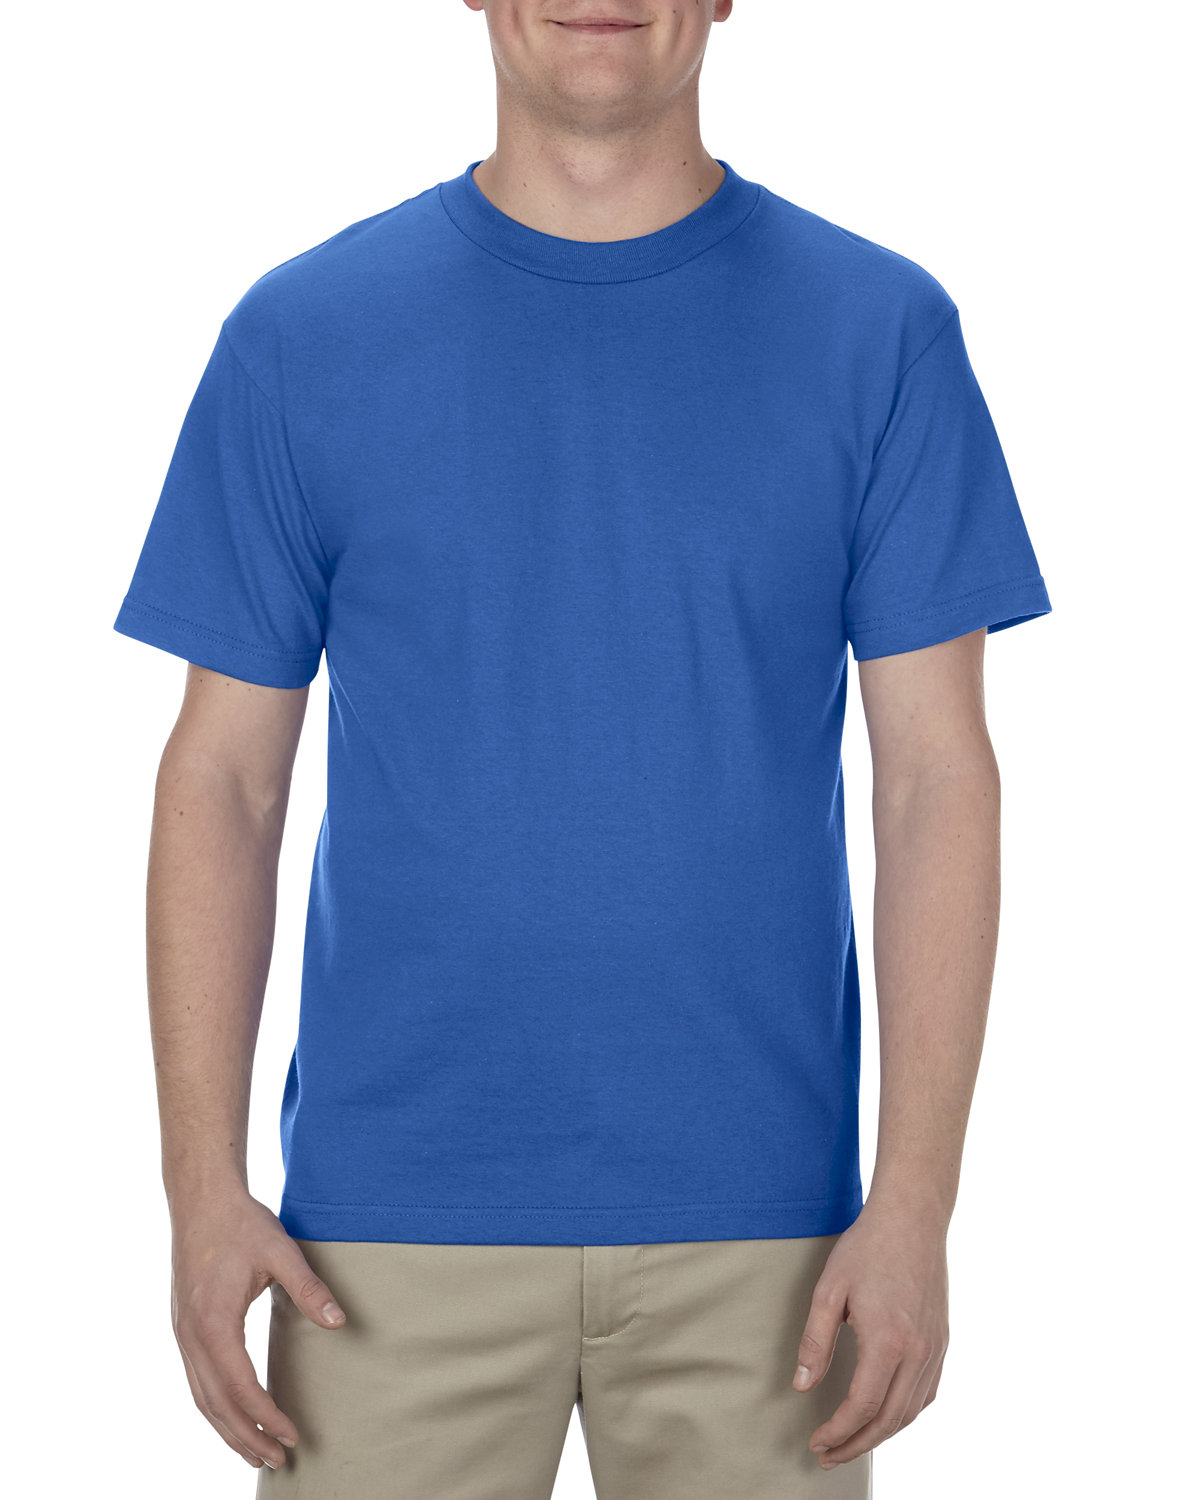 Alstyle Adult 6.0 oz., 100% Cotton T-Shirt ROYAL 